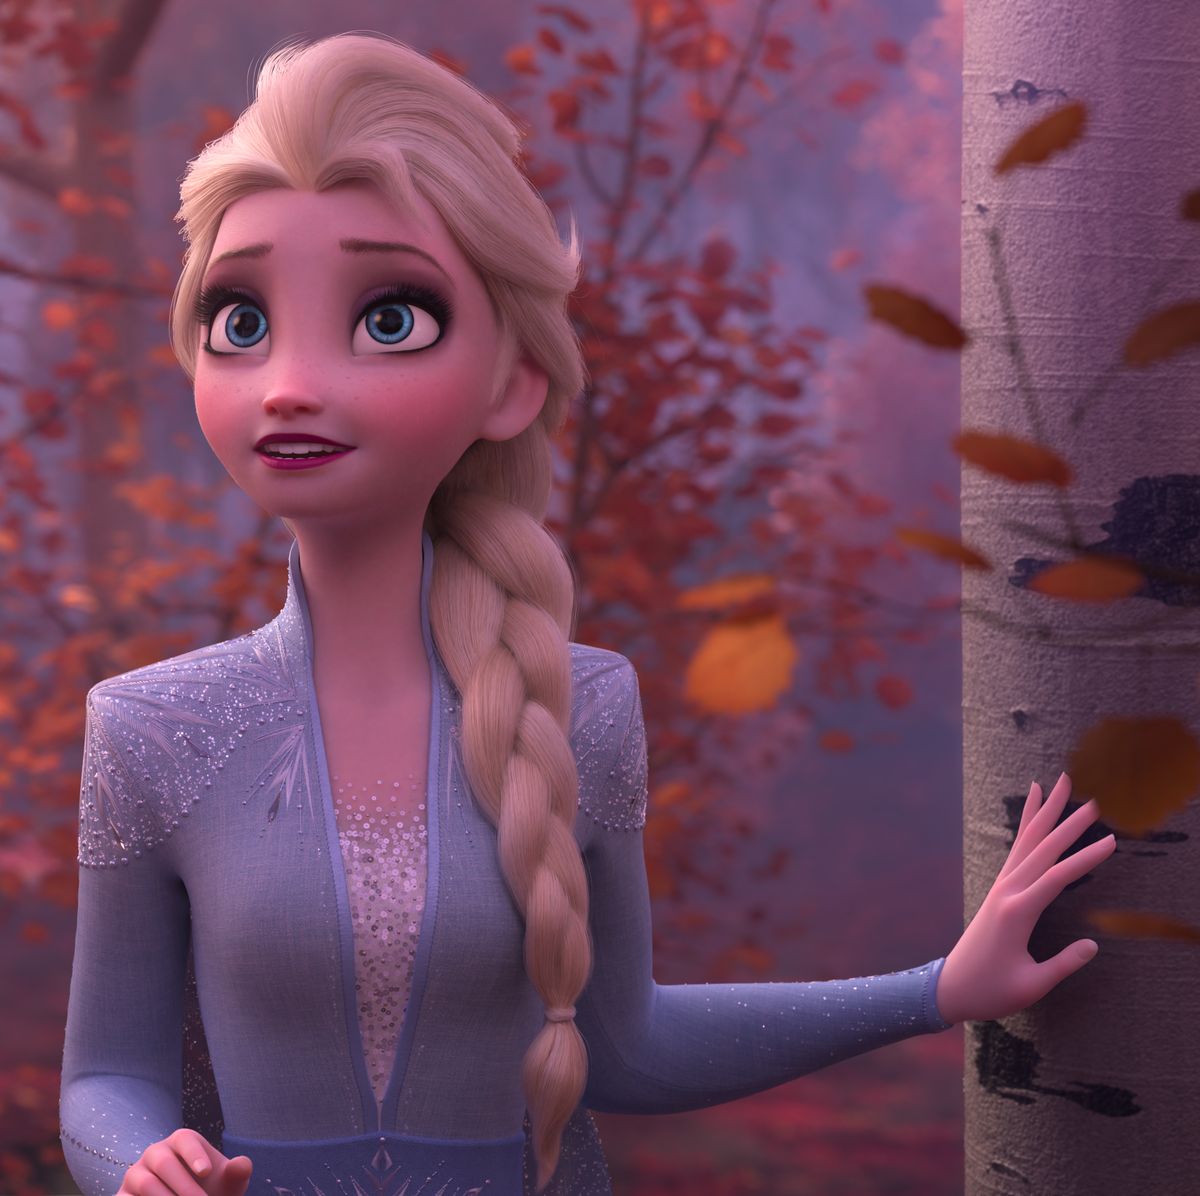 Kristen Bell Speaks on Whether 'Frozen 3' Is in the Works